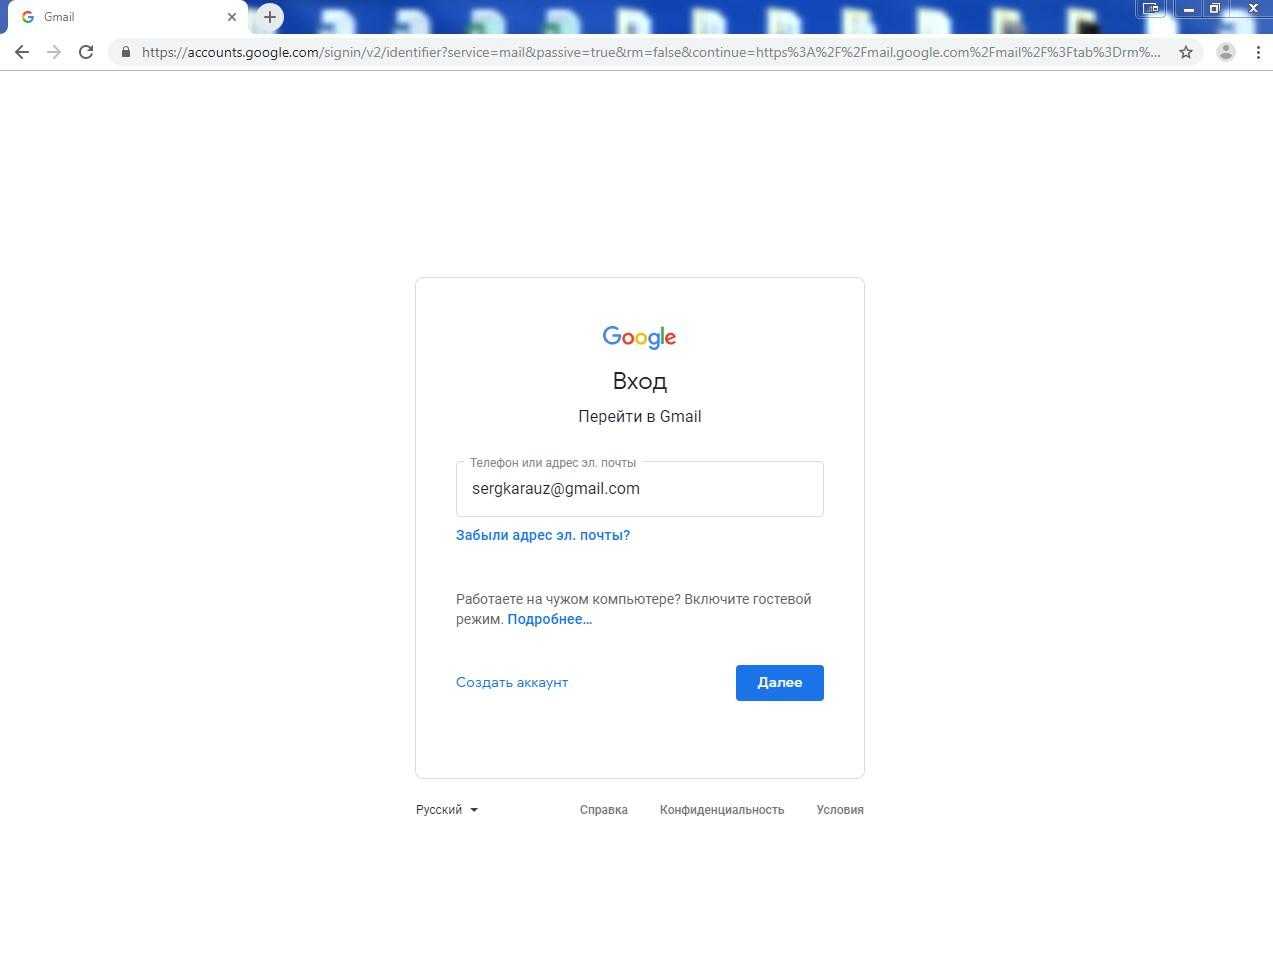 Как восстановить аккаунт google на андроиде: пароль, дотуп тарифкин.ру
как восстановить аккаунт google на андроиде: пароль, дотуп